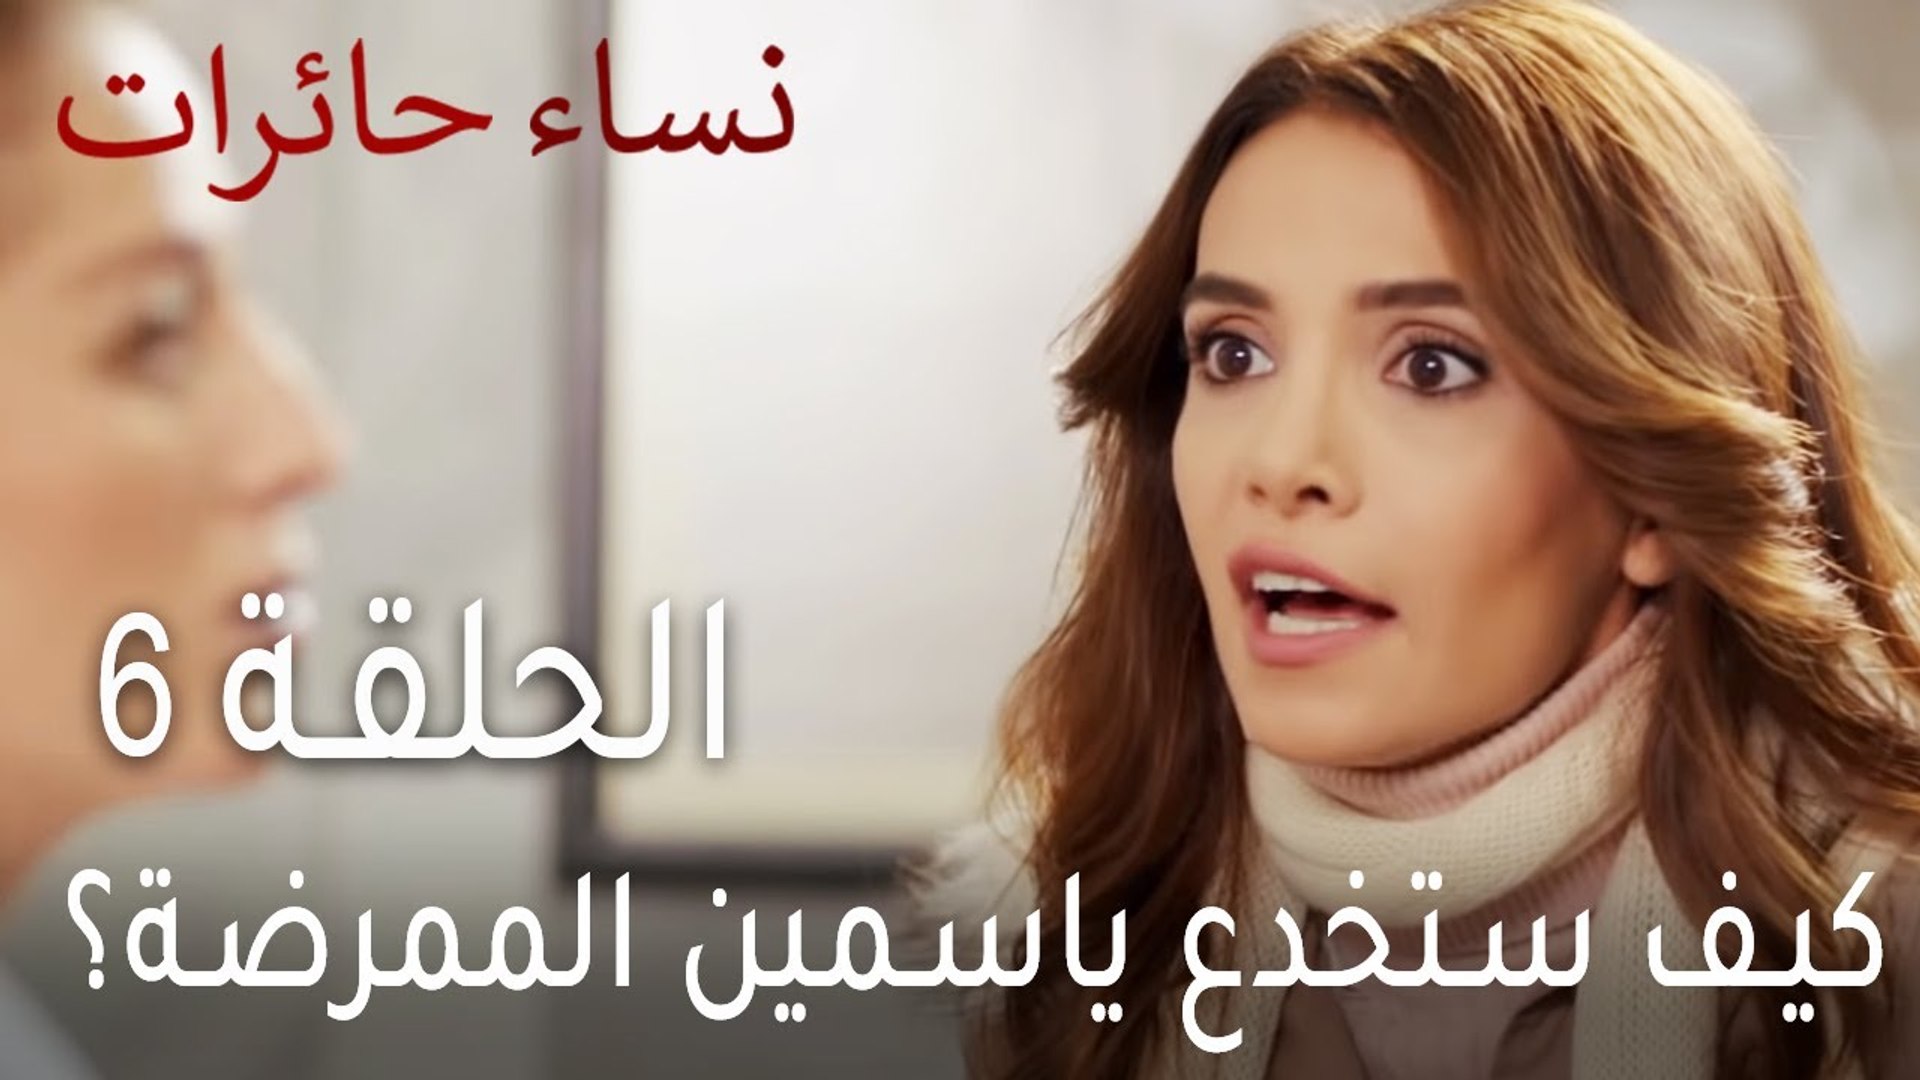 نساء حائرات الحلقة 6 - كيف ستخدع ياسمين الممرضة؟ - فيديو Dailymotion